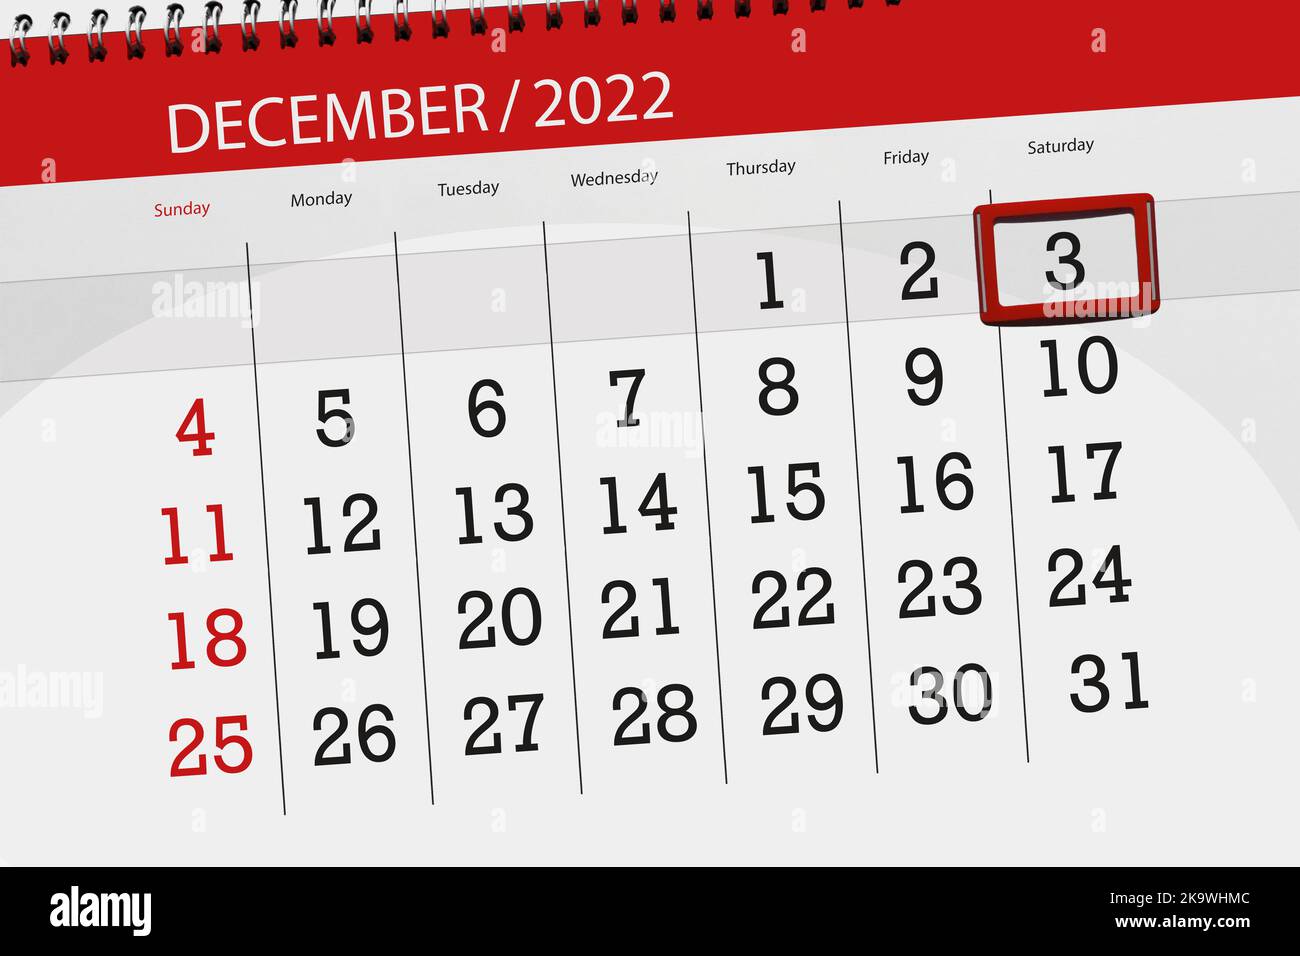 Calendrier 2022, date limite, jour, mois, page, organisateur, date, décembre, samedi, numéro 3. Banque D'Images